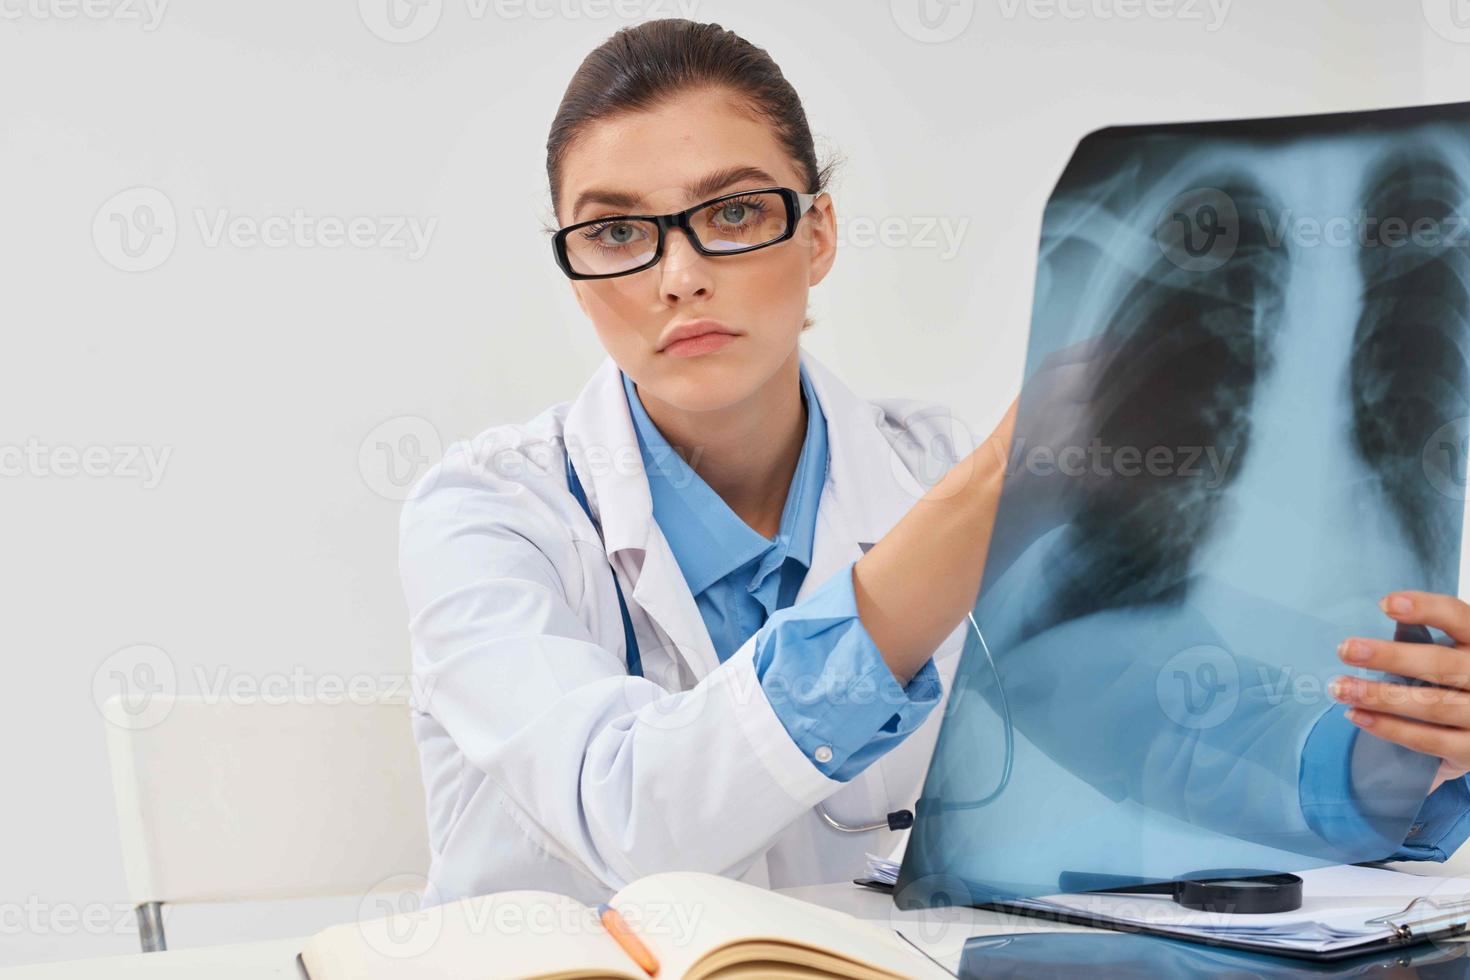 läkare med röntgen lunga diagnostik klinik behandling foto